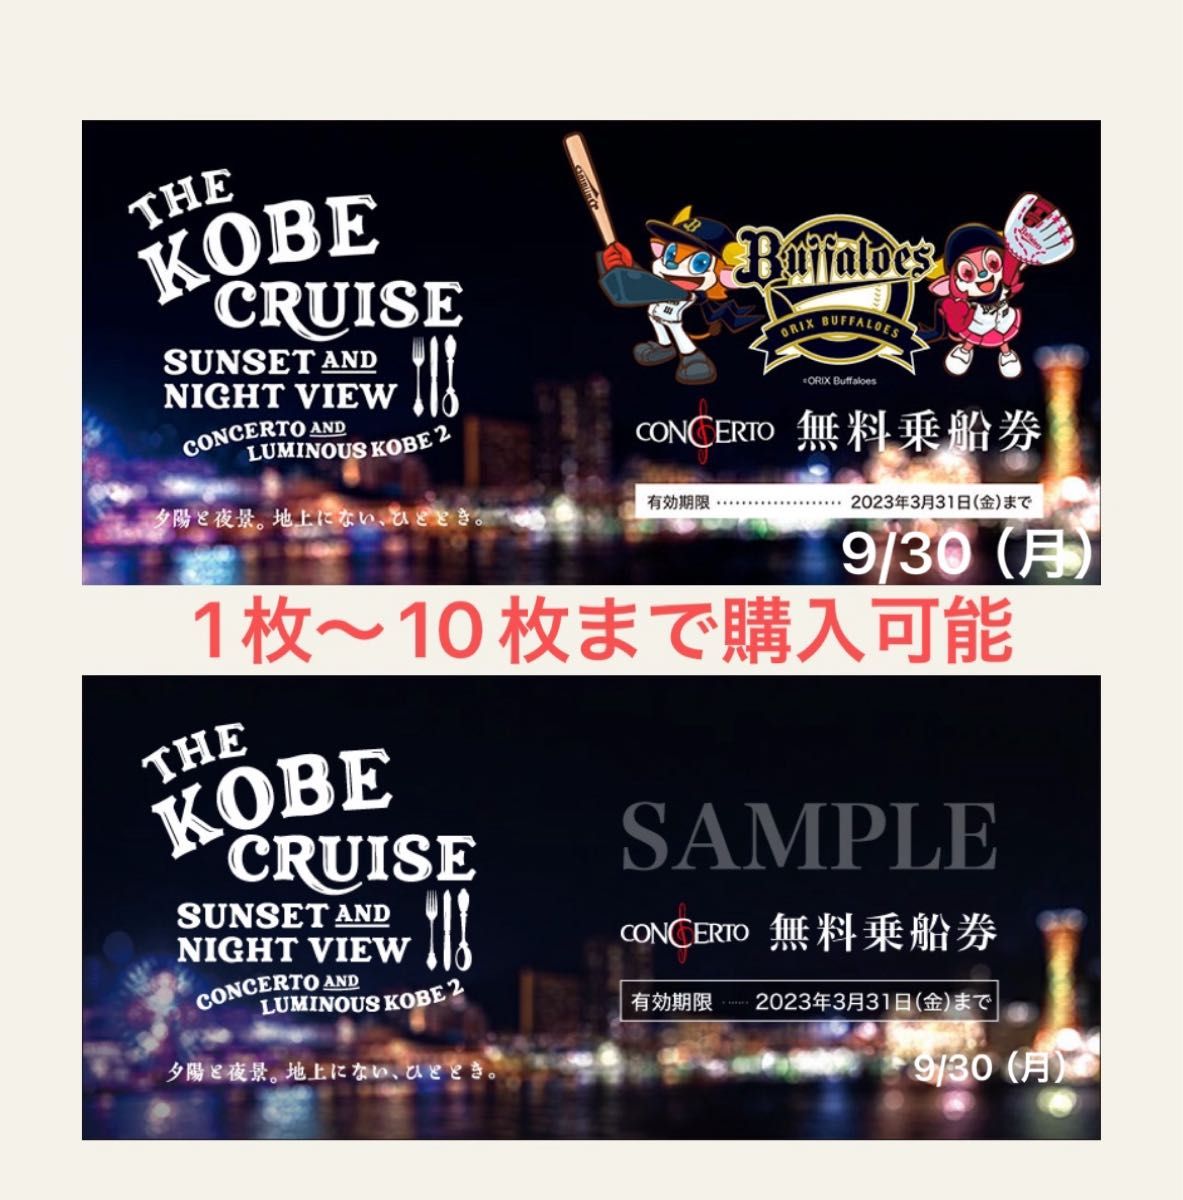 THE KOBE CRUISE コンチェルト・ルミナス神戸2 無料乗船券